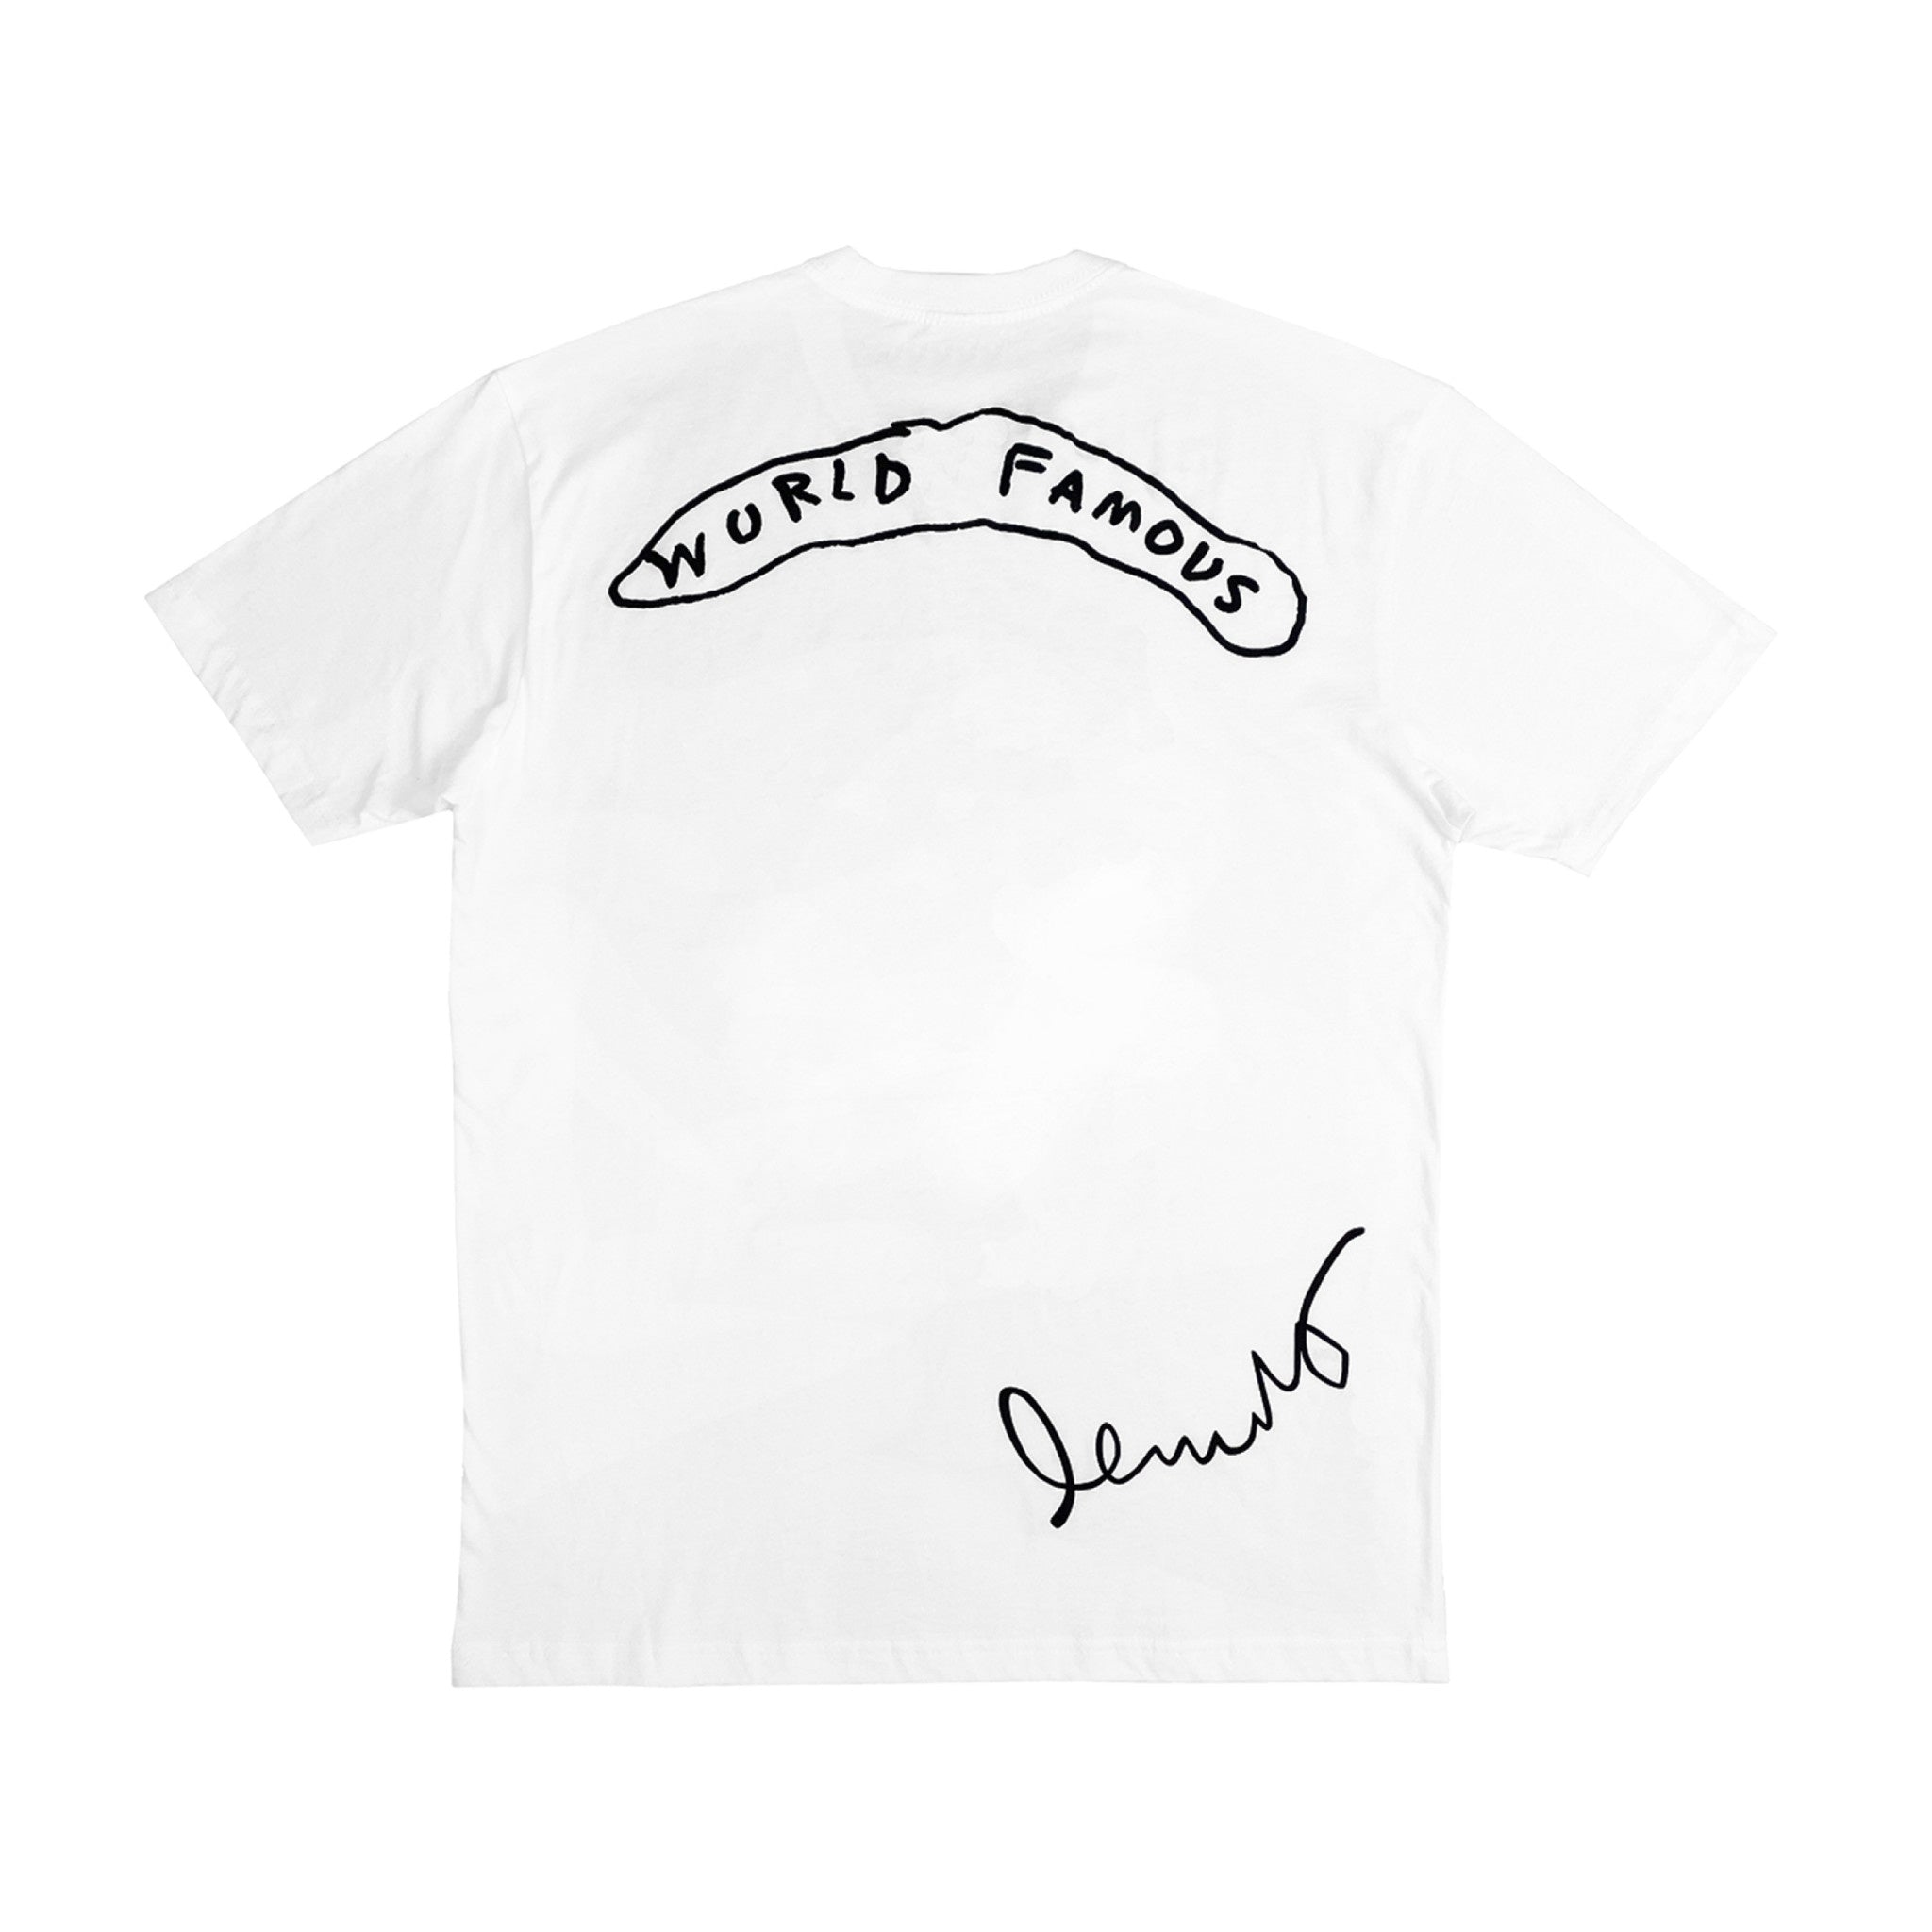 Basquiat WORLD FAMOUS FAB 5 FREDDY T-Shirt - Wynwood Walls Shop